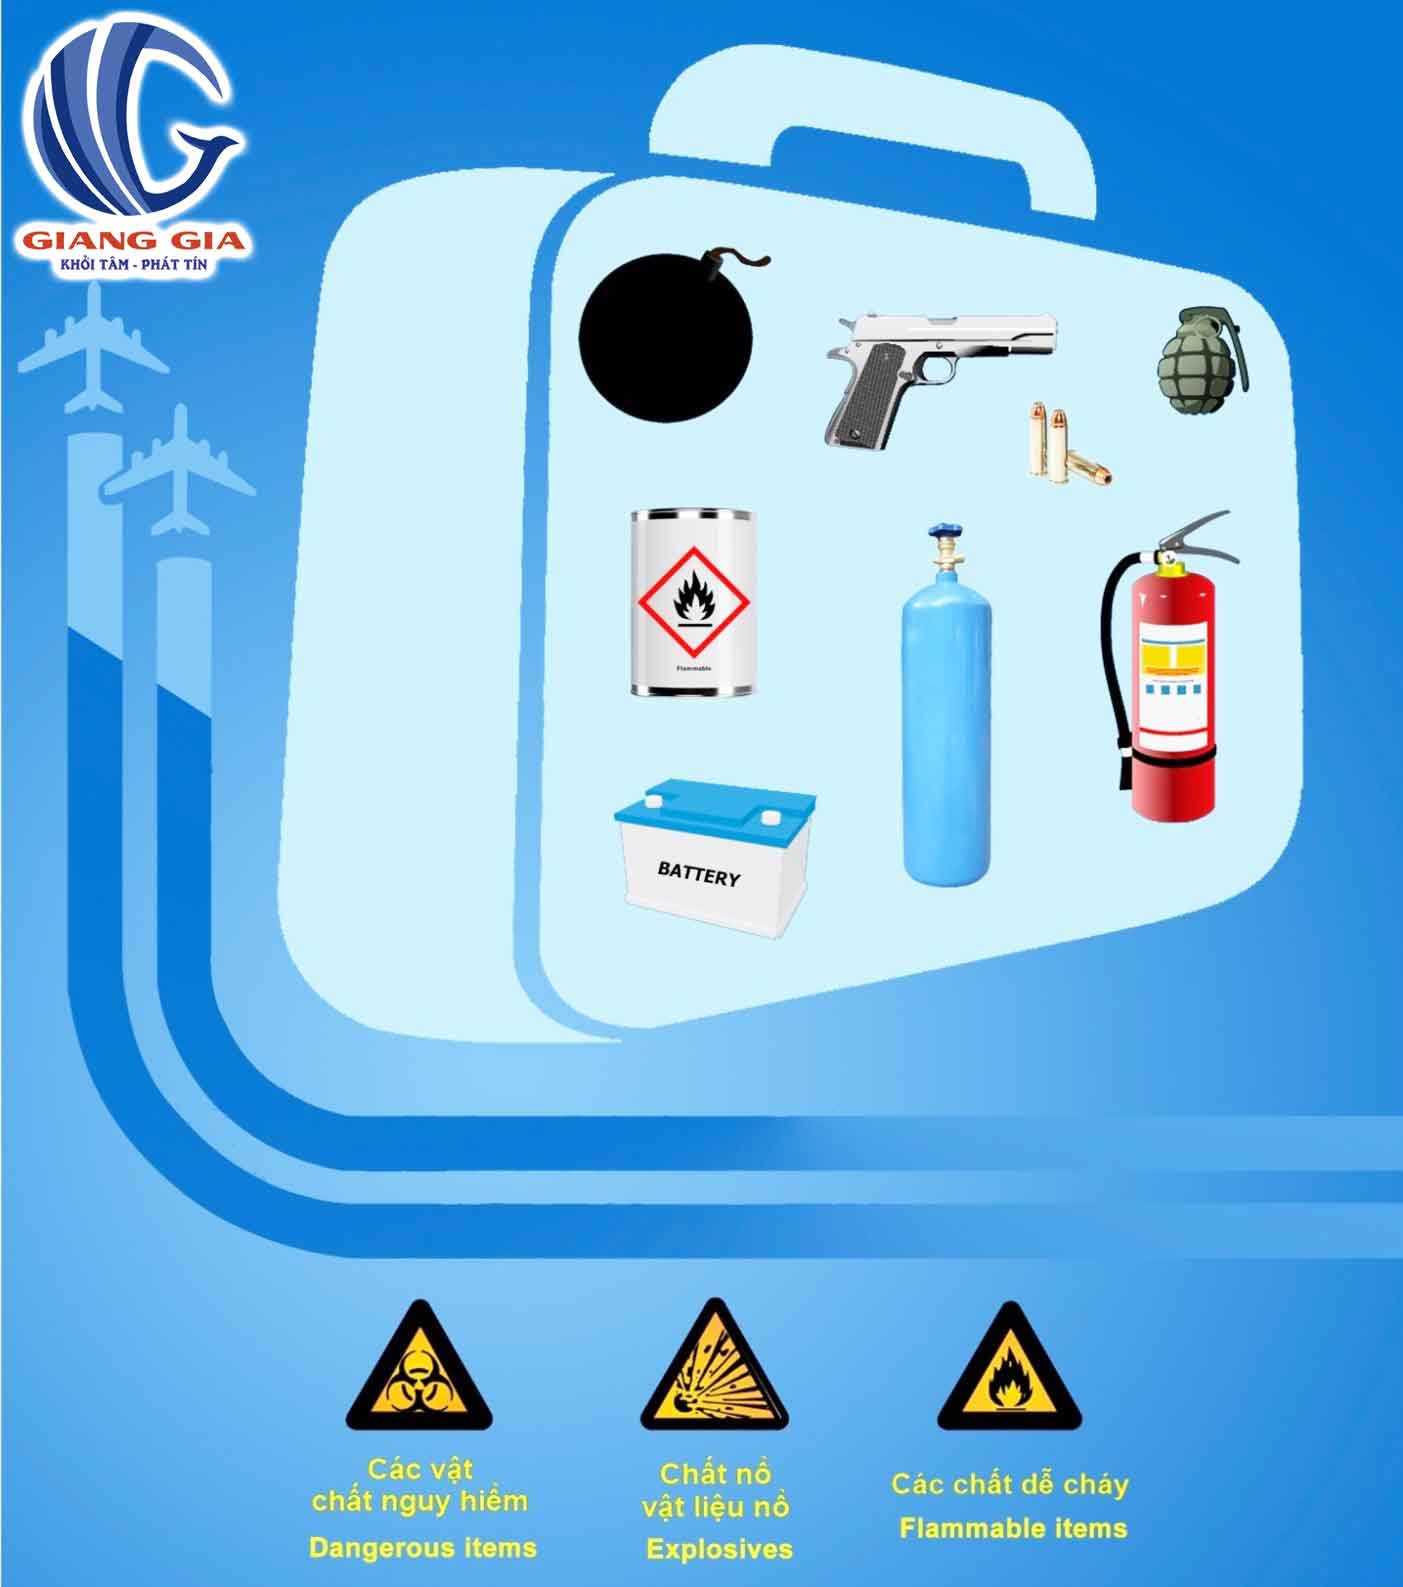 Hành lý xách tay không được mang và cấm những gì khi đi máy bay